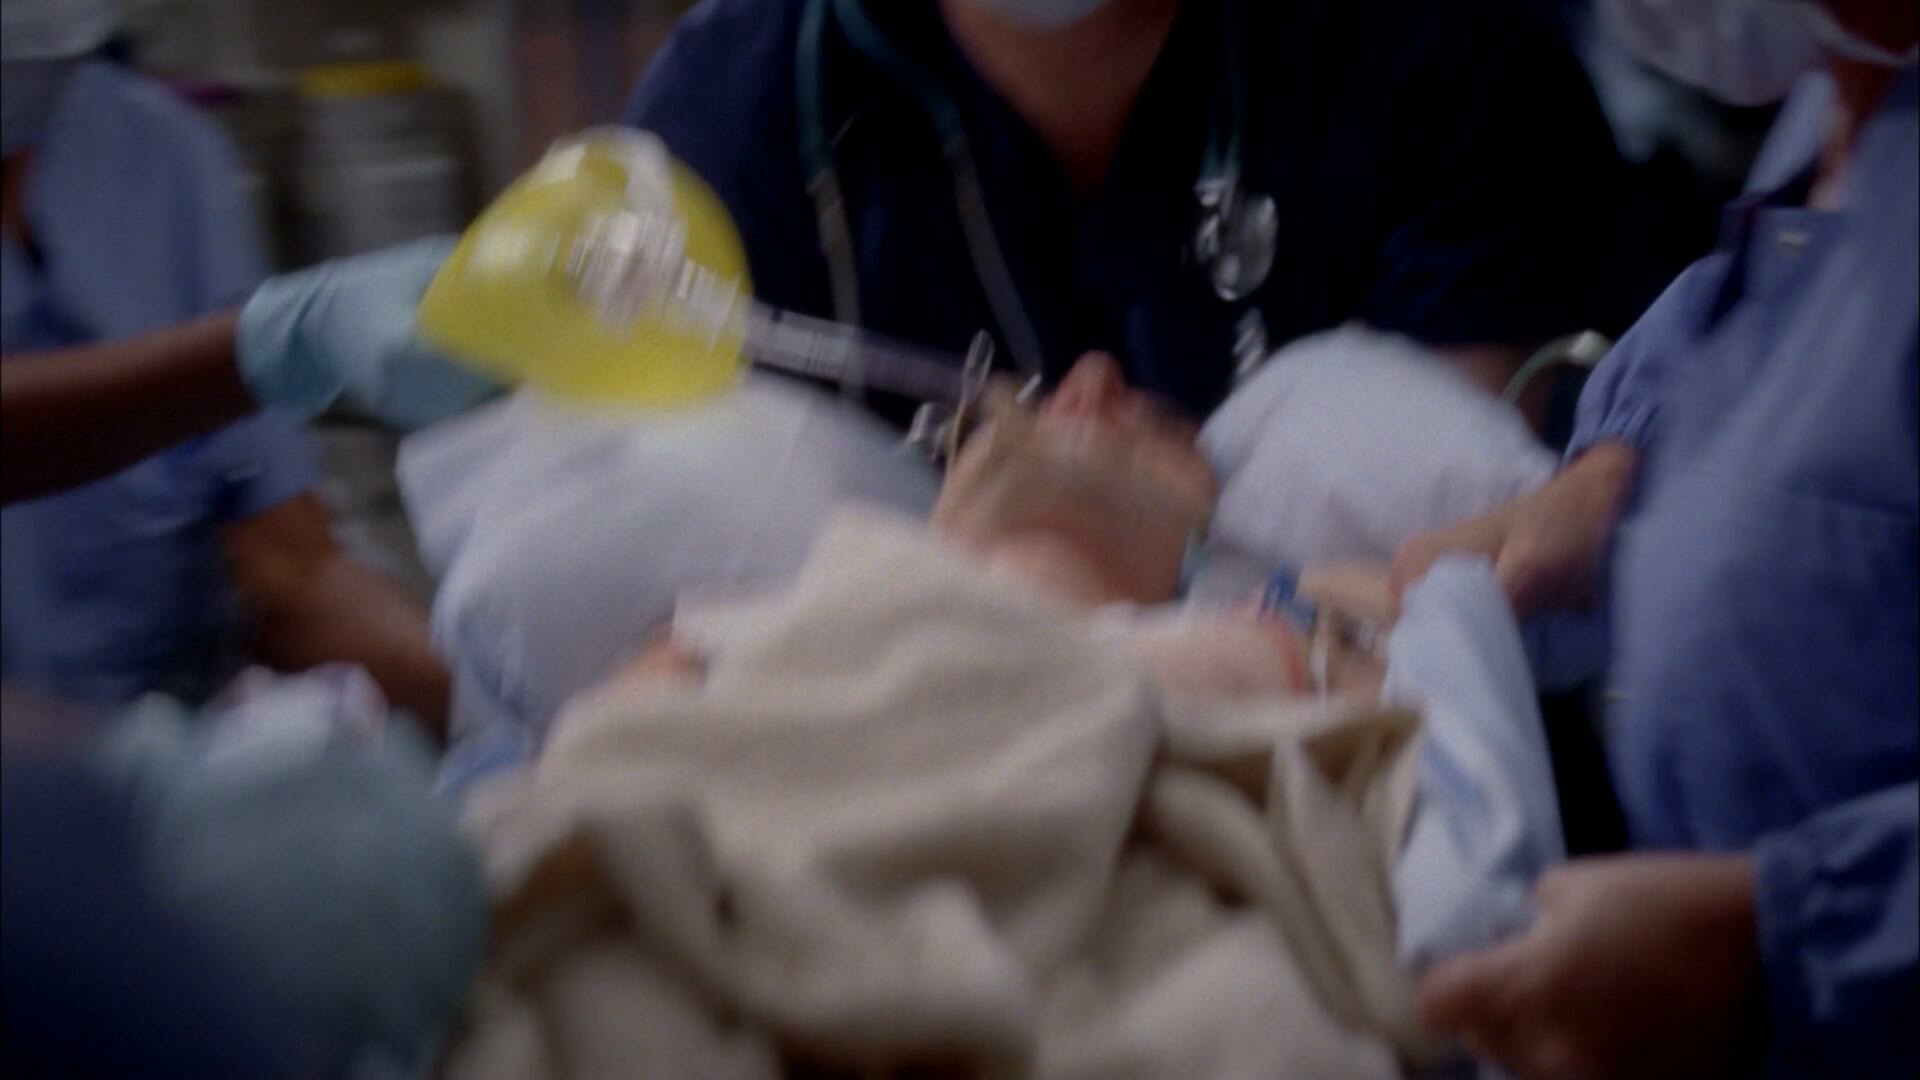 Greys Anatomy S08E11 This Magic Moment 1080p AMZN WEB DL DDP5 1 x264 NTb TGx